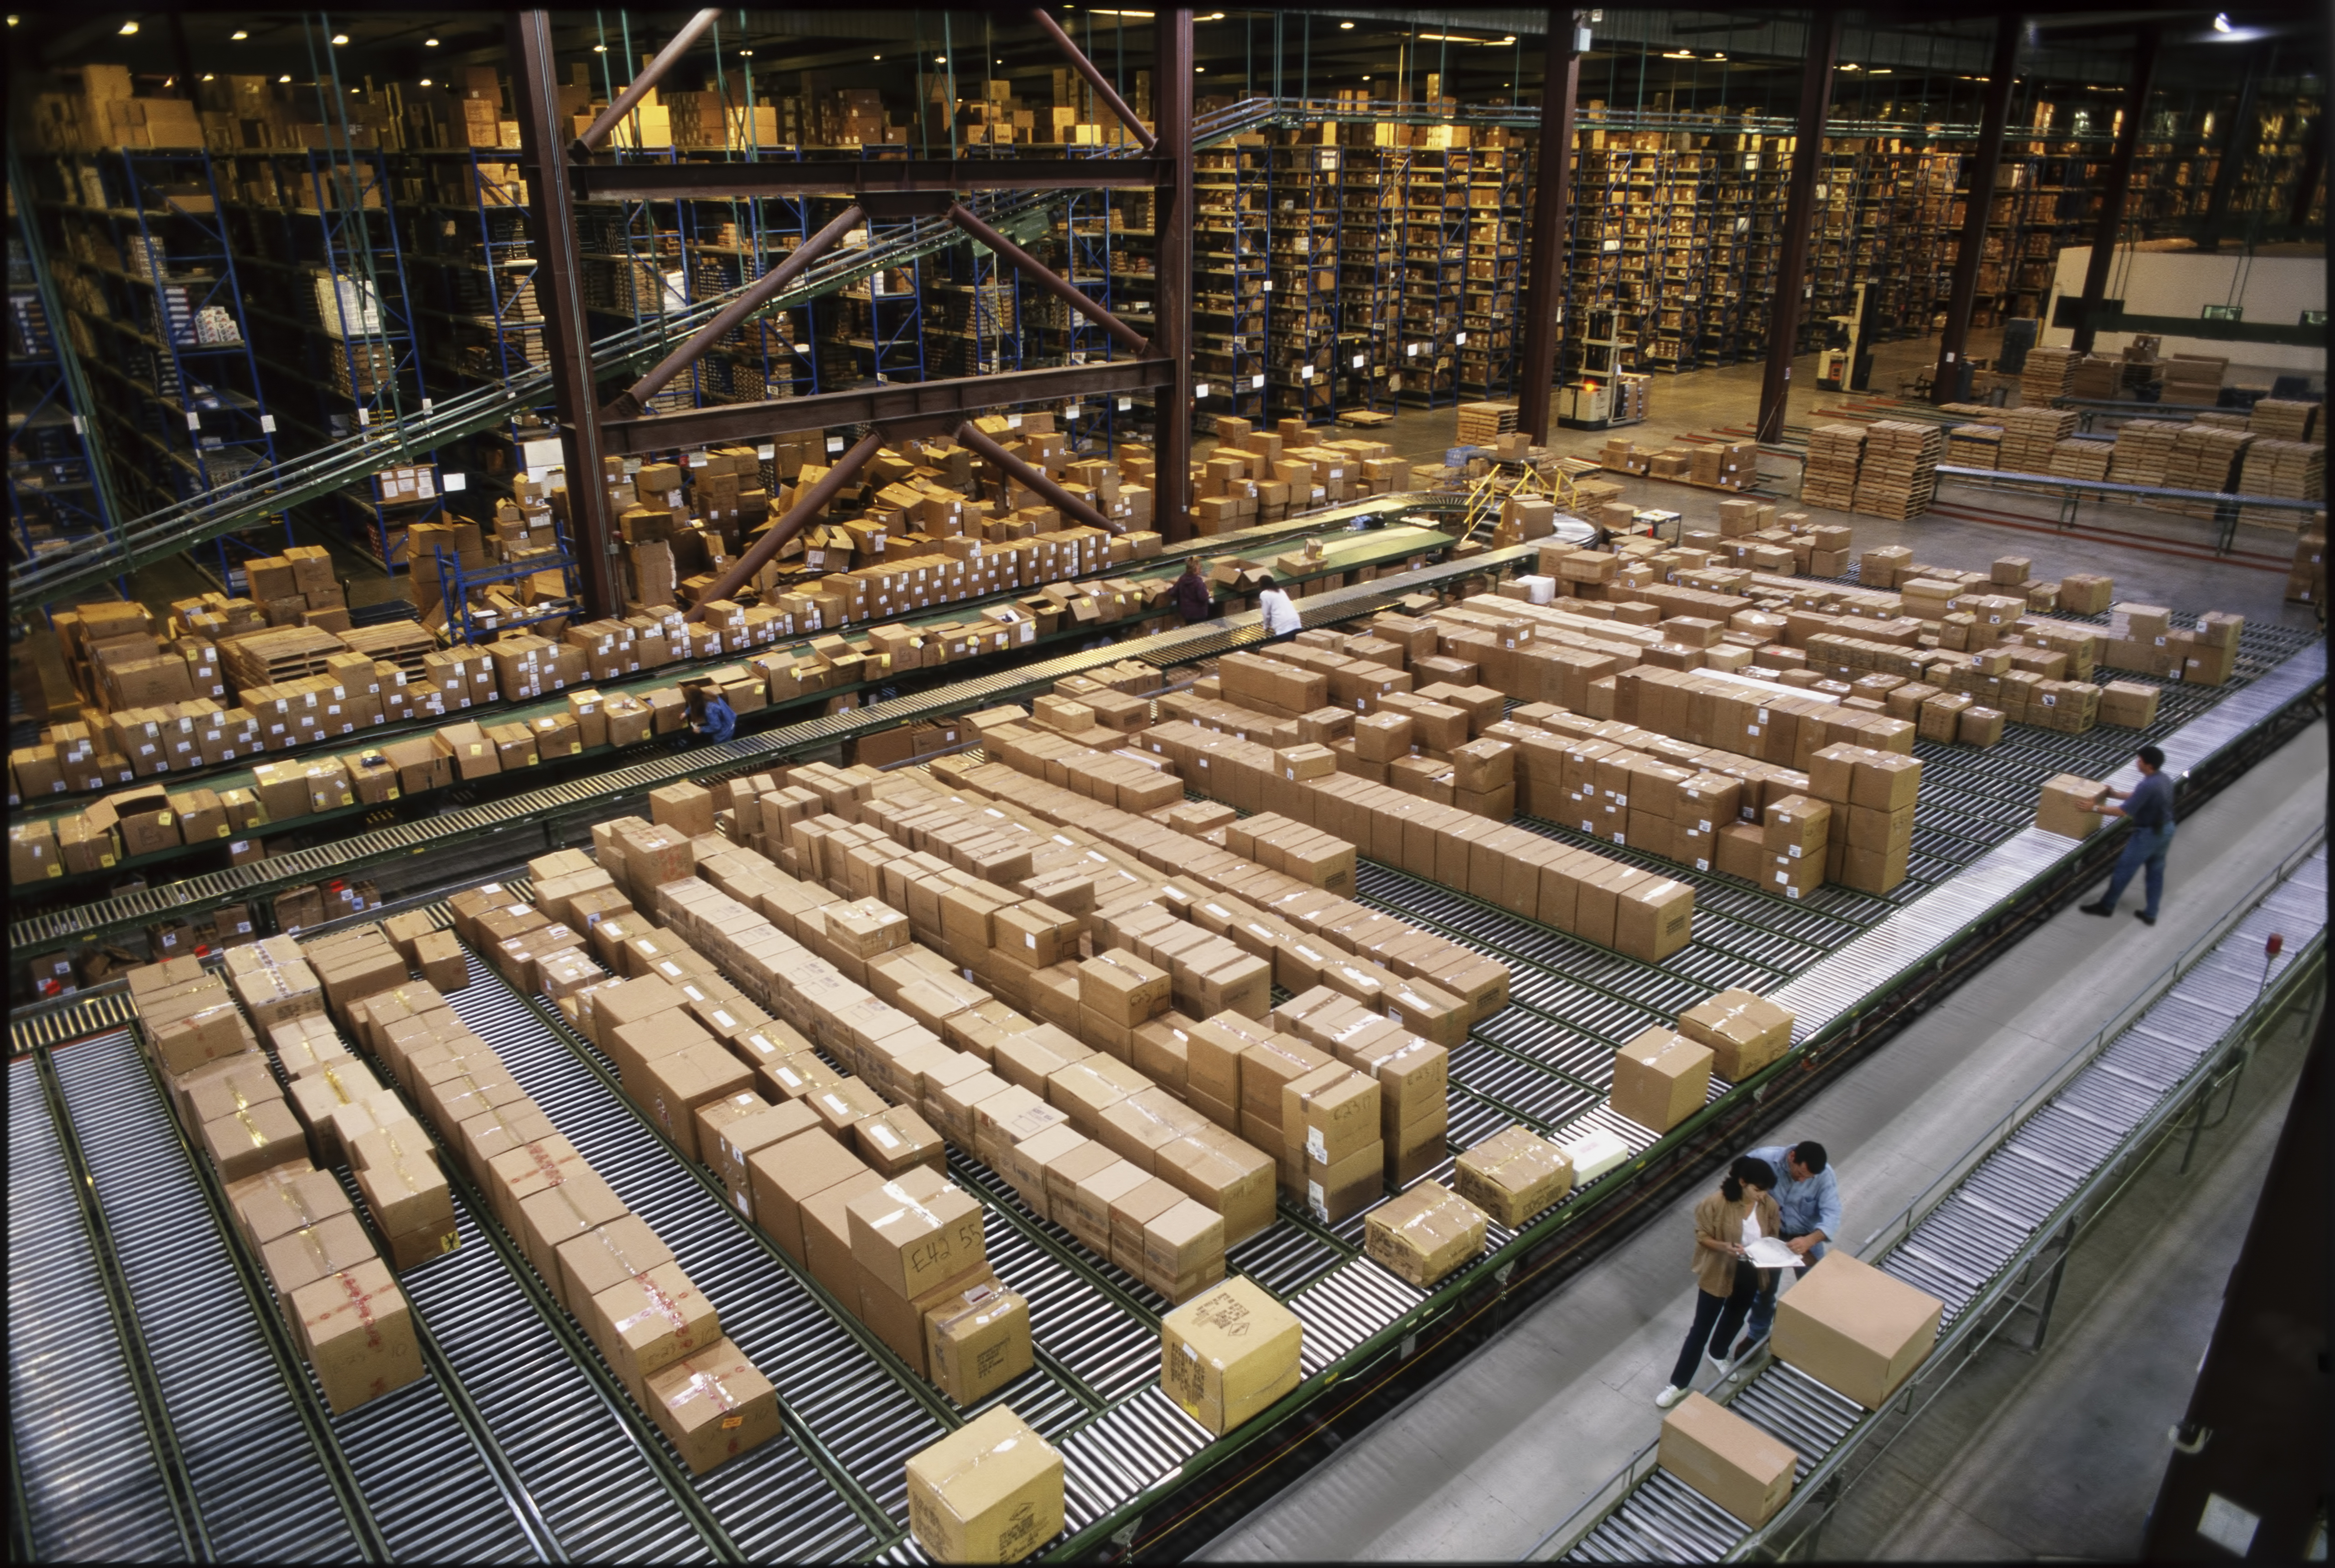 Vue d'ensemble d'un grand entrepôt de distribution industrielle stockant des produits dans des boîtes en carton sur des tapis roulants et des rayonnages.